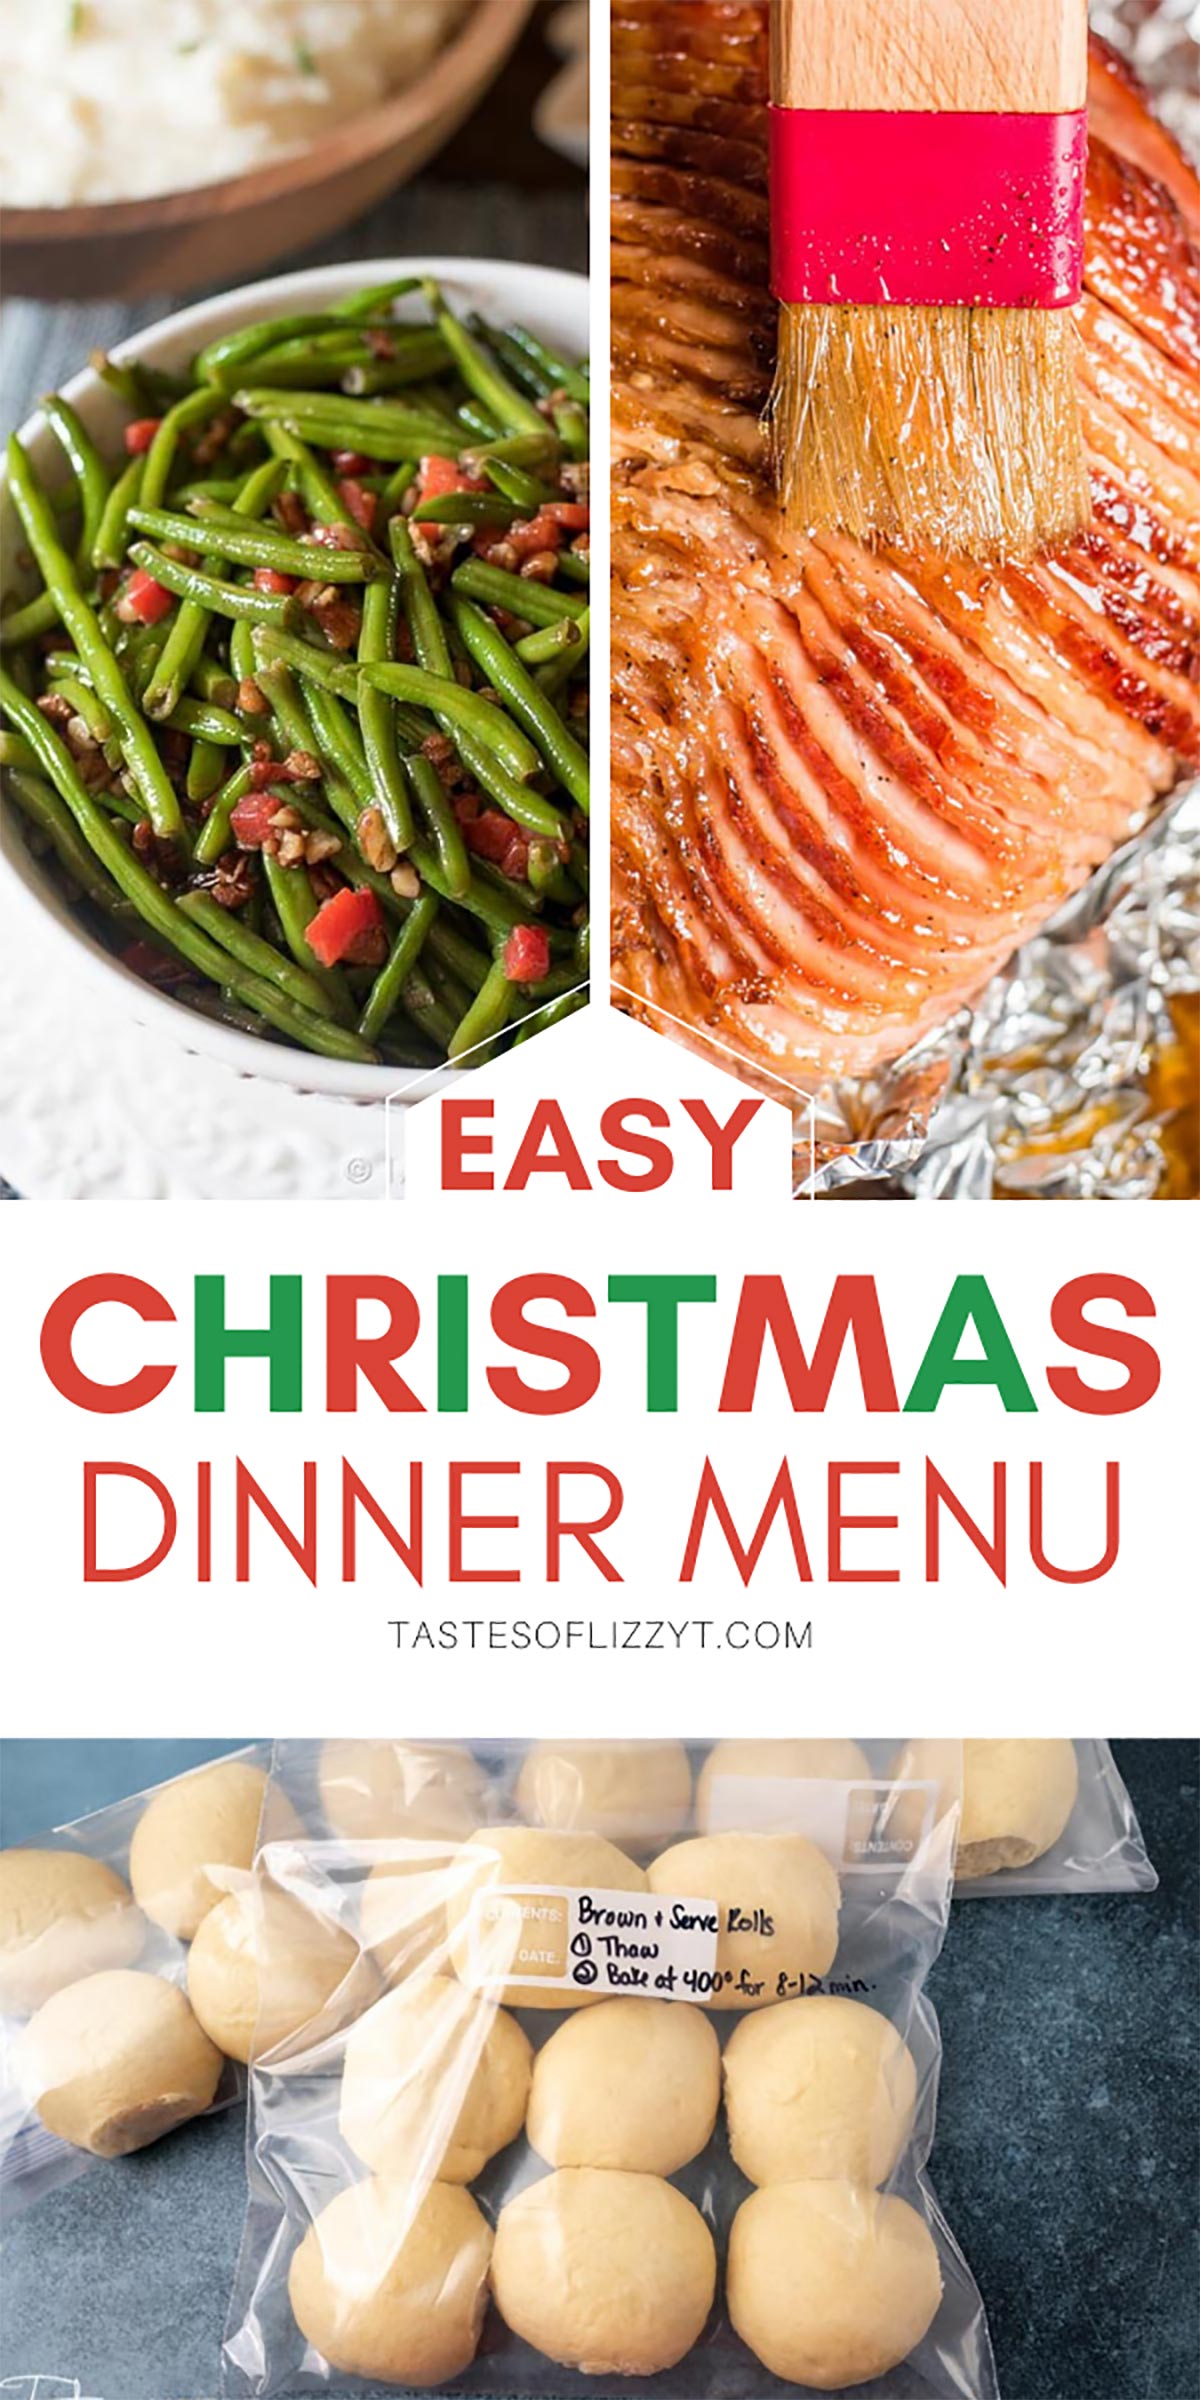 https://www.tastesoflizzyt.com/wp-content/uploads/2020/11/christmas-dinner-pin3.jpg